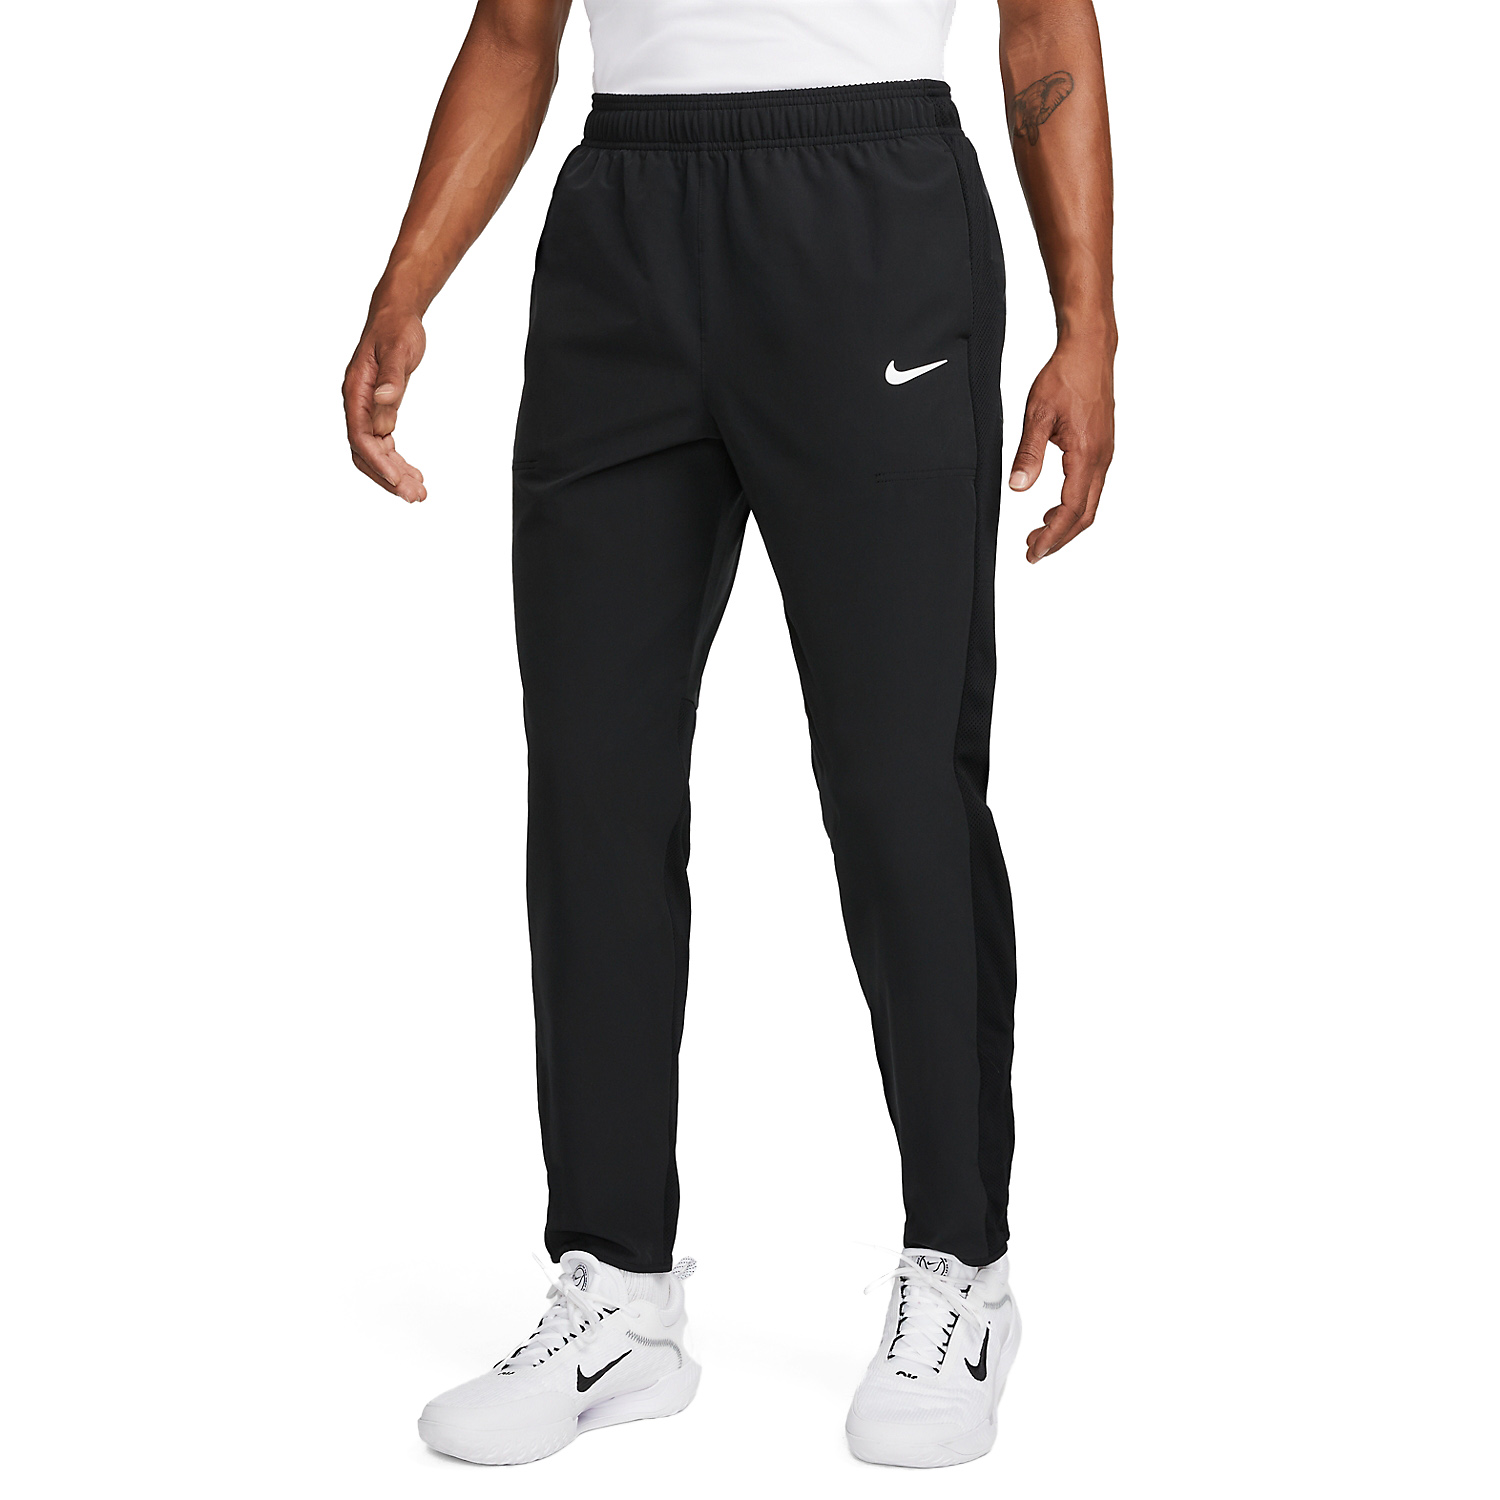 Nike Court Advantage Men's Tennis Pants - Black/White